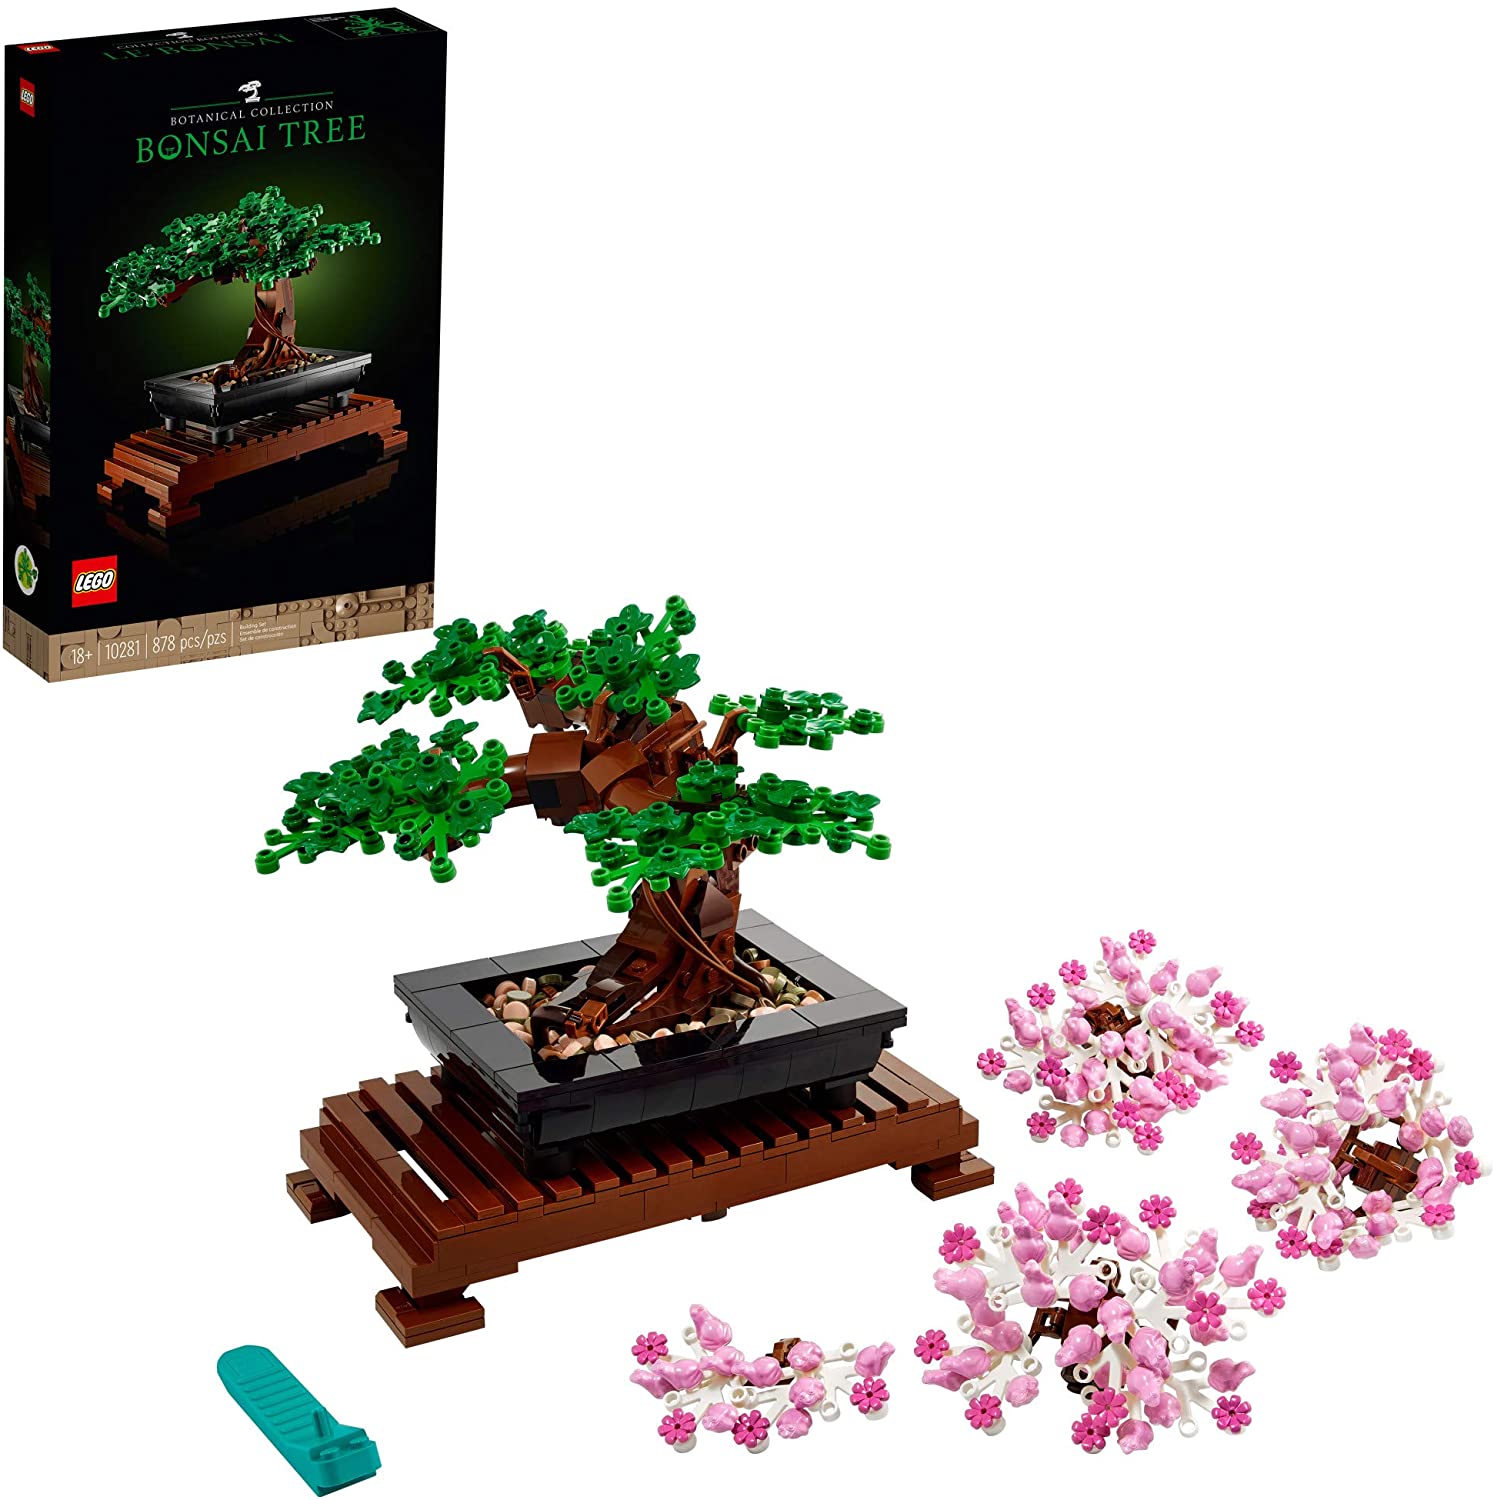 LEGO Bonsai Tree 10281 Building Kit $49.99